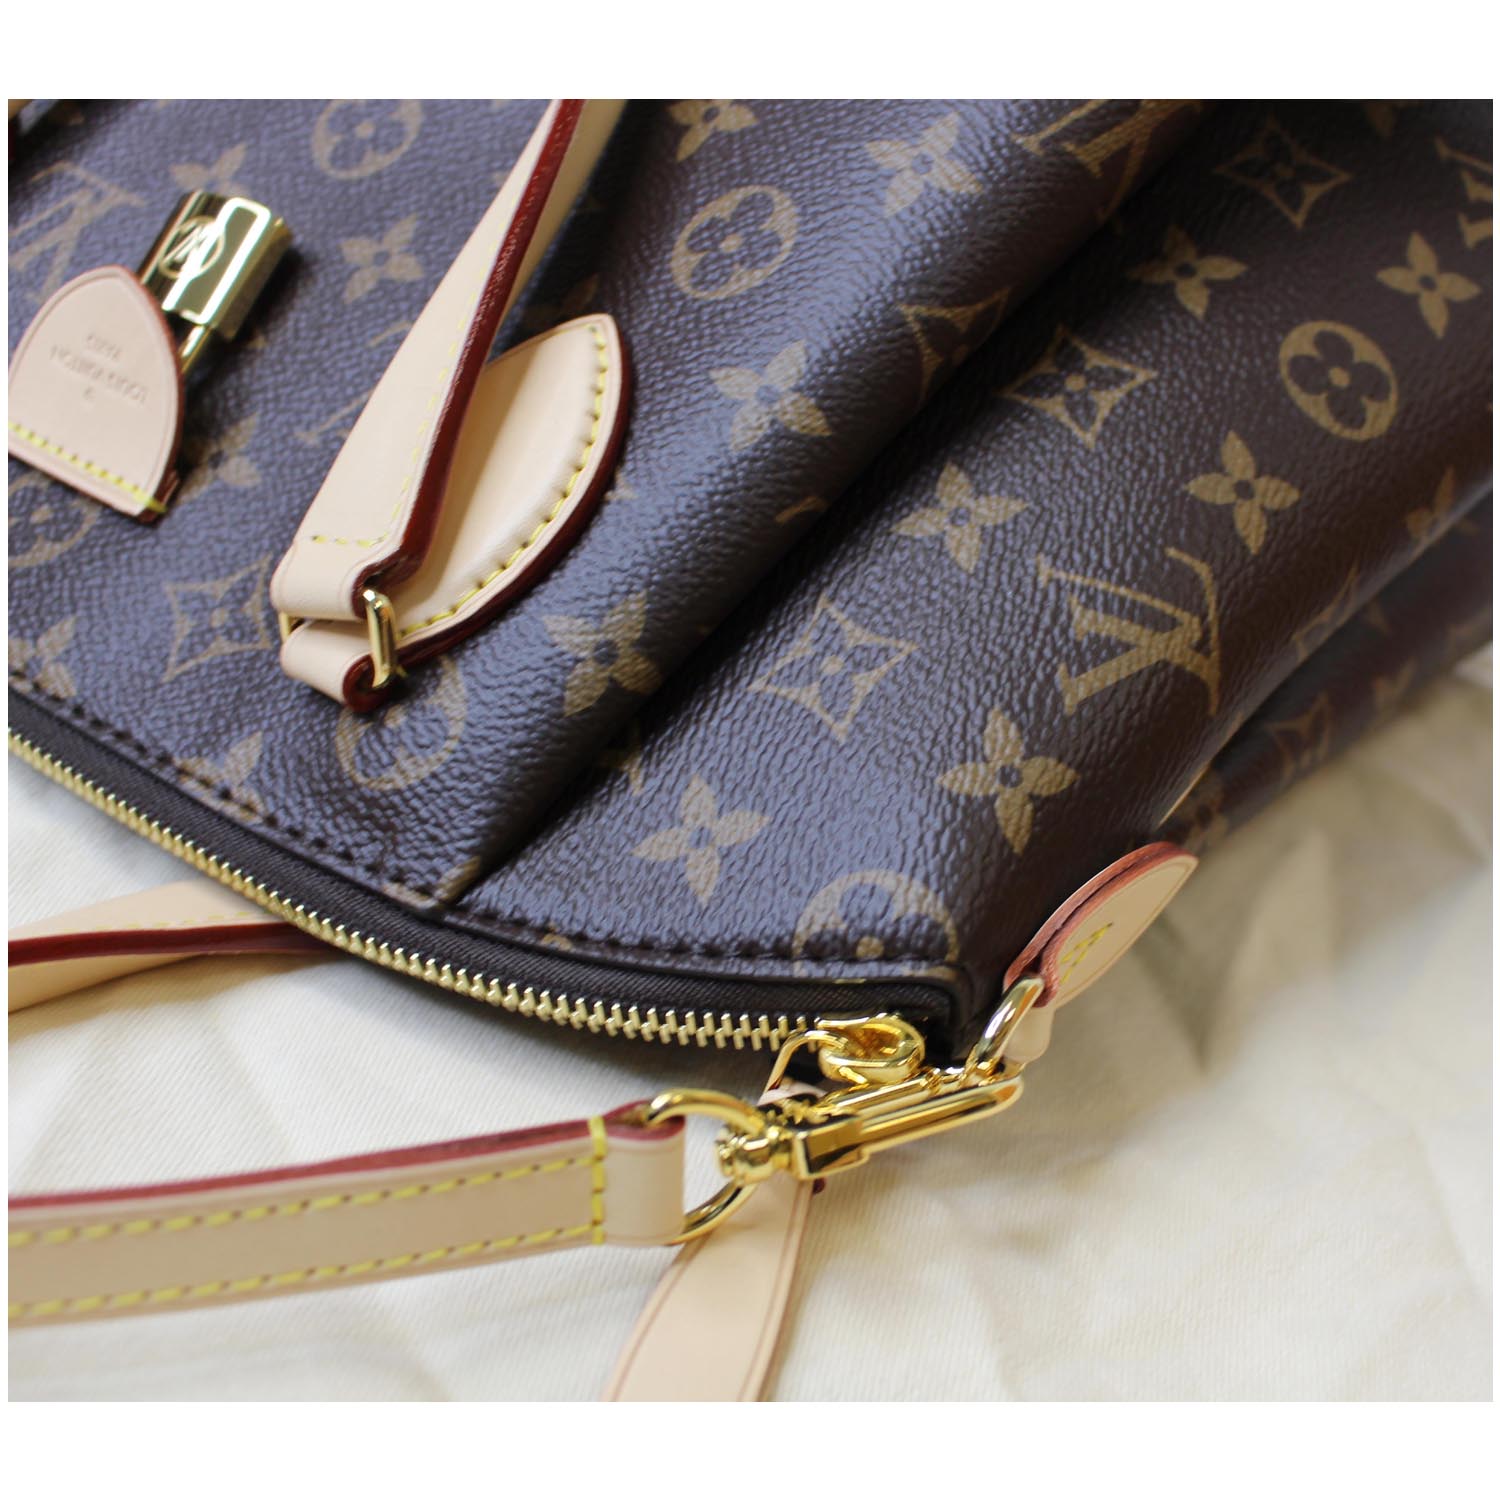 Authentic Louis Vuitton Monogram Rivoli PM M44543 2Way Shoulder Hand Bag  6477F